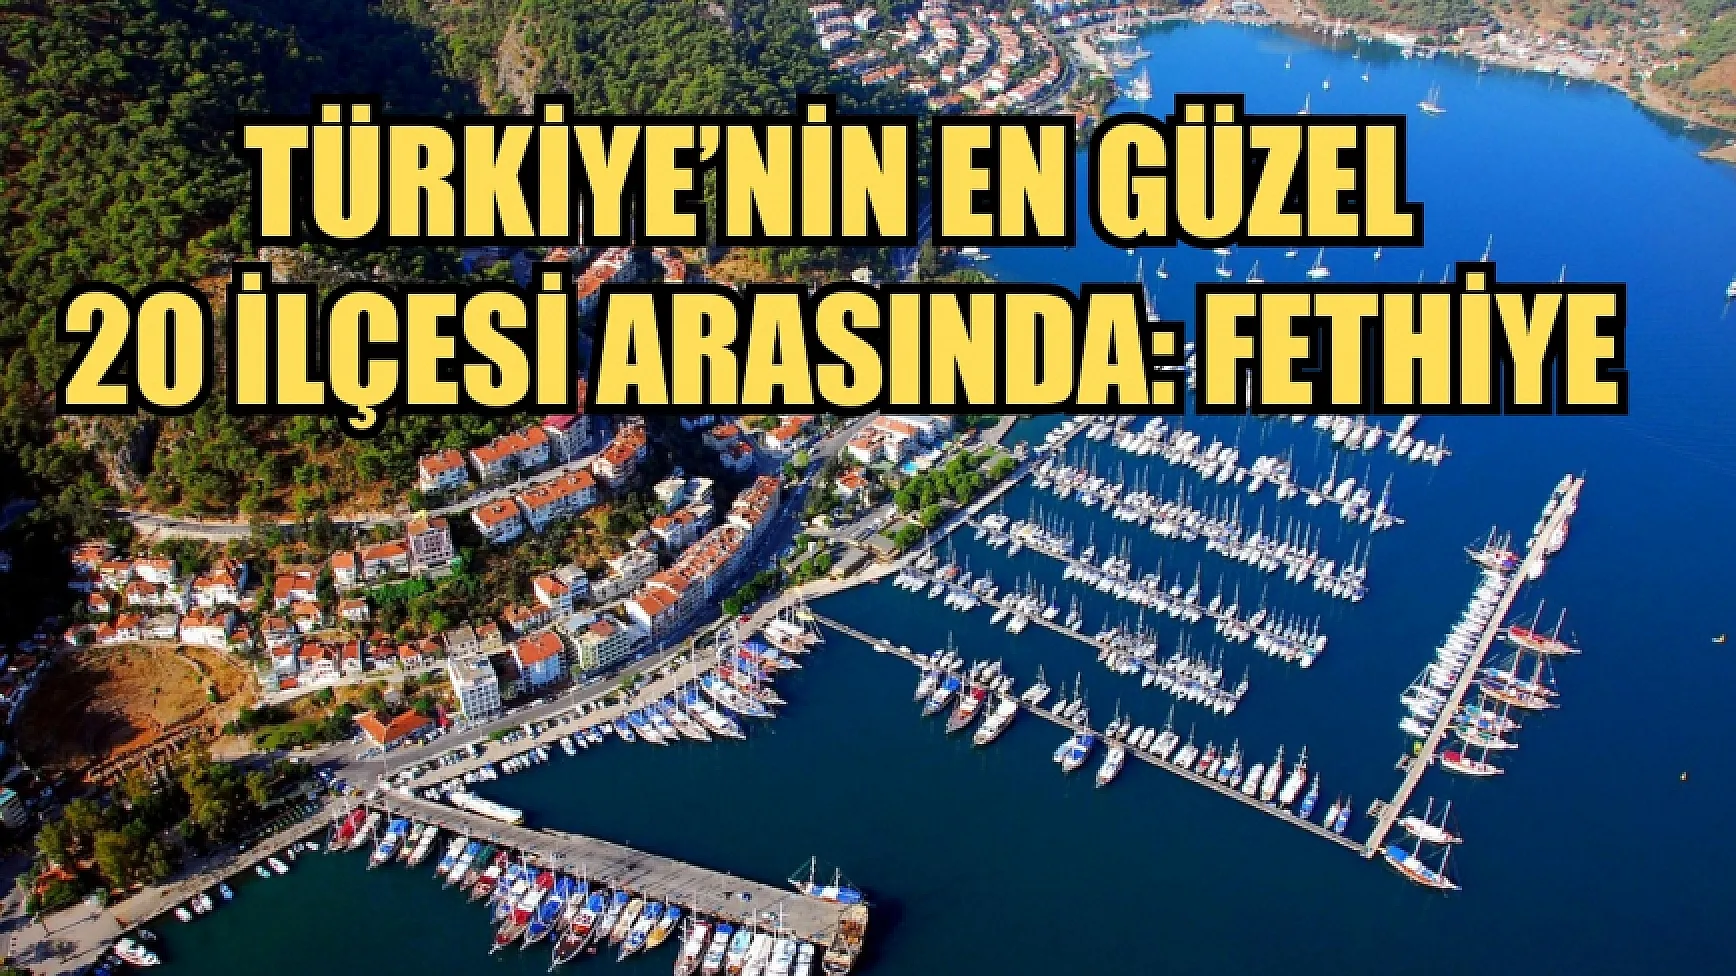 Türkiye’nin en güzel 20 ilçesi arasında: Fethiye